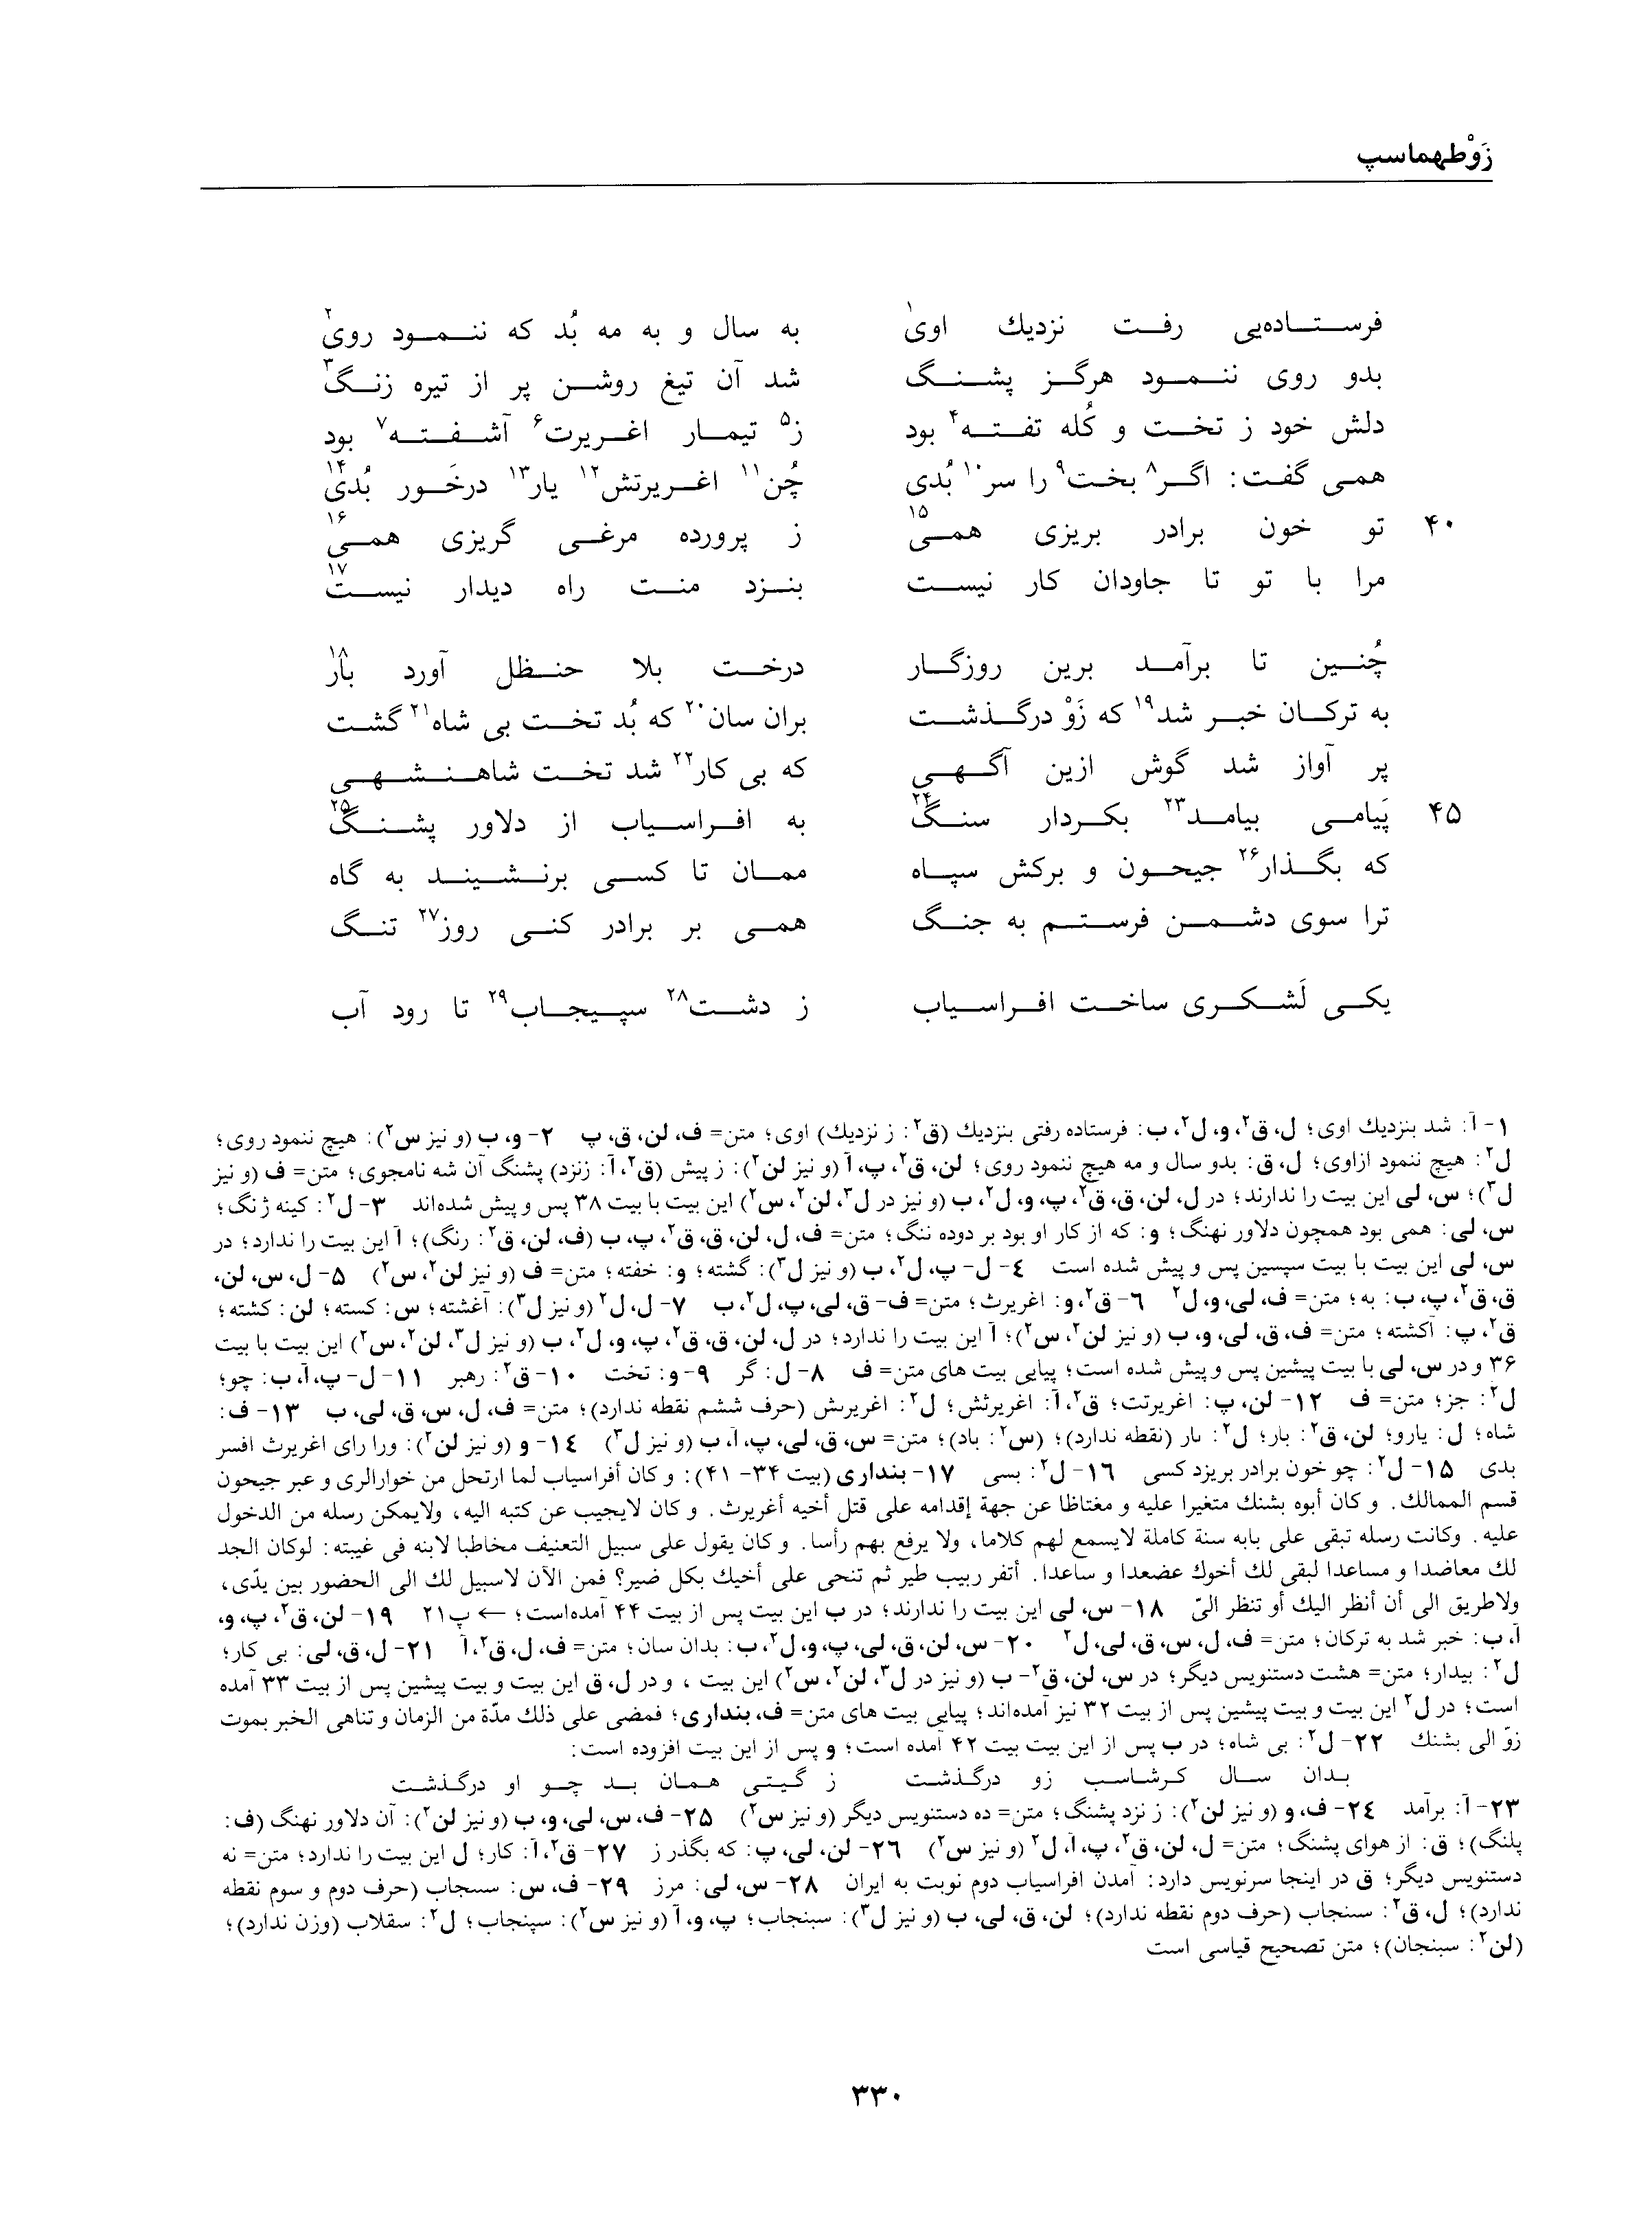 vol. 1, p. 330